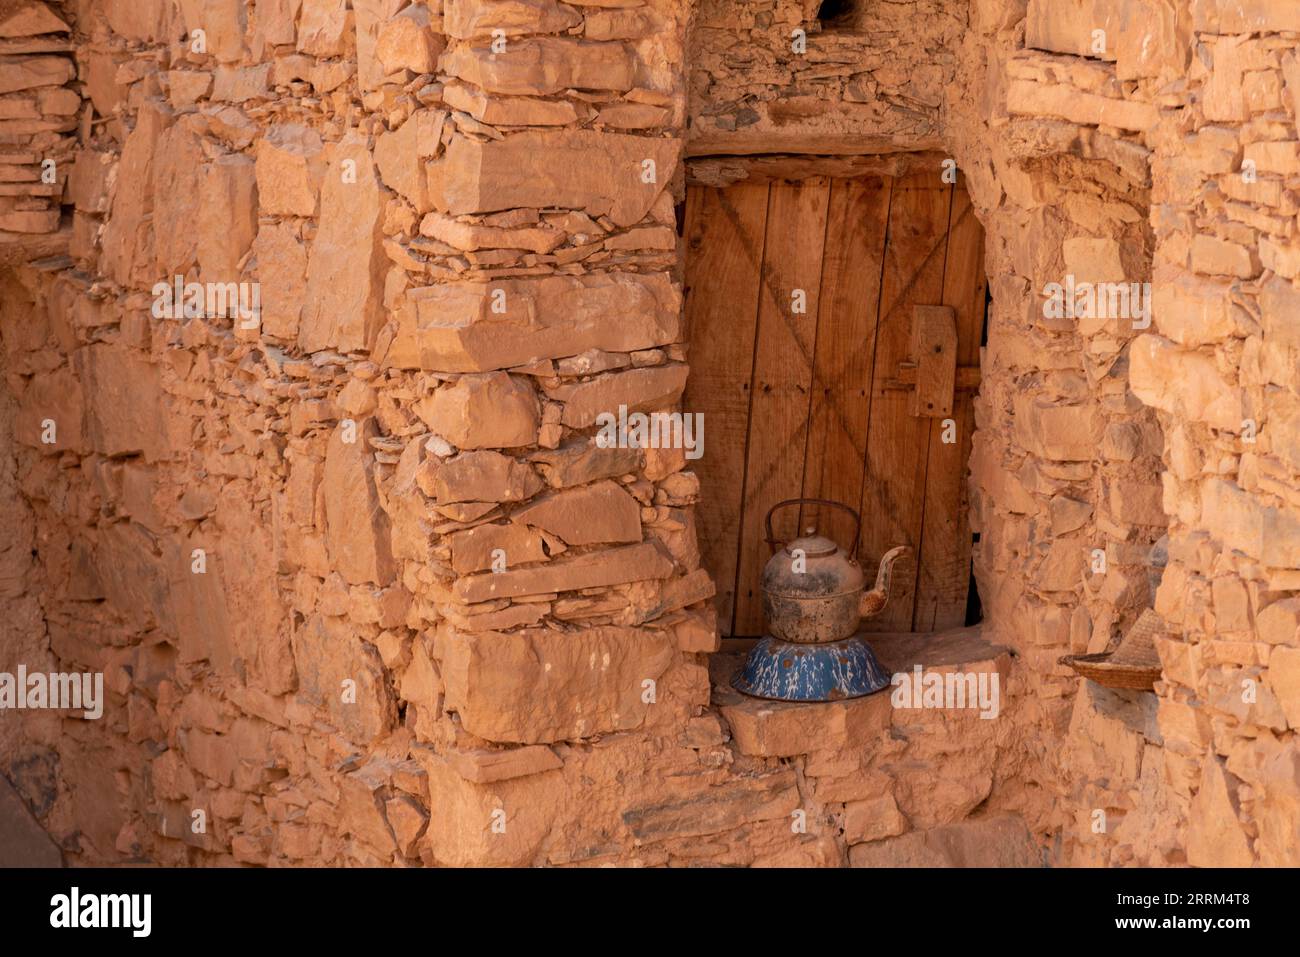 Une vieille boîte de thé devant une ancienne fenêtre d'une maison berbère au Maroc Banque D'Images